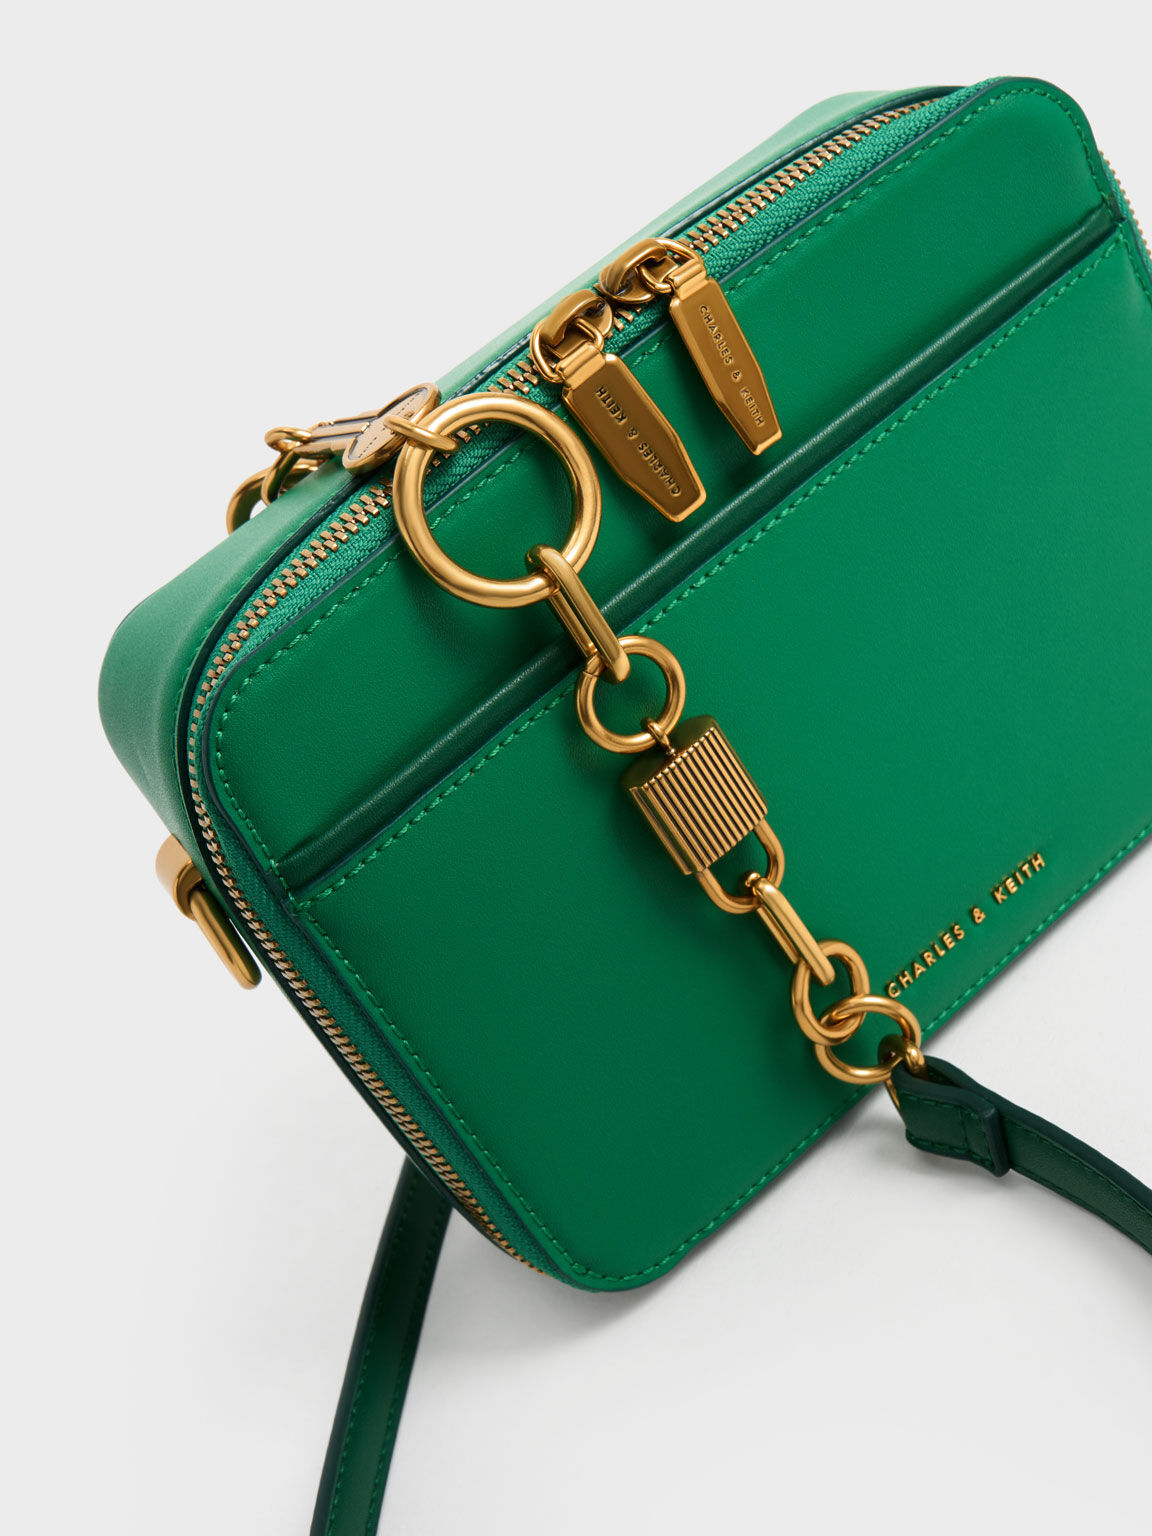 Lock & Key Chain Handle Bag, Green, hi-res